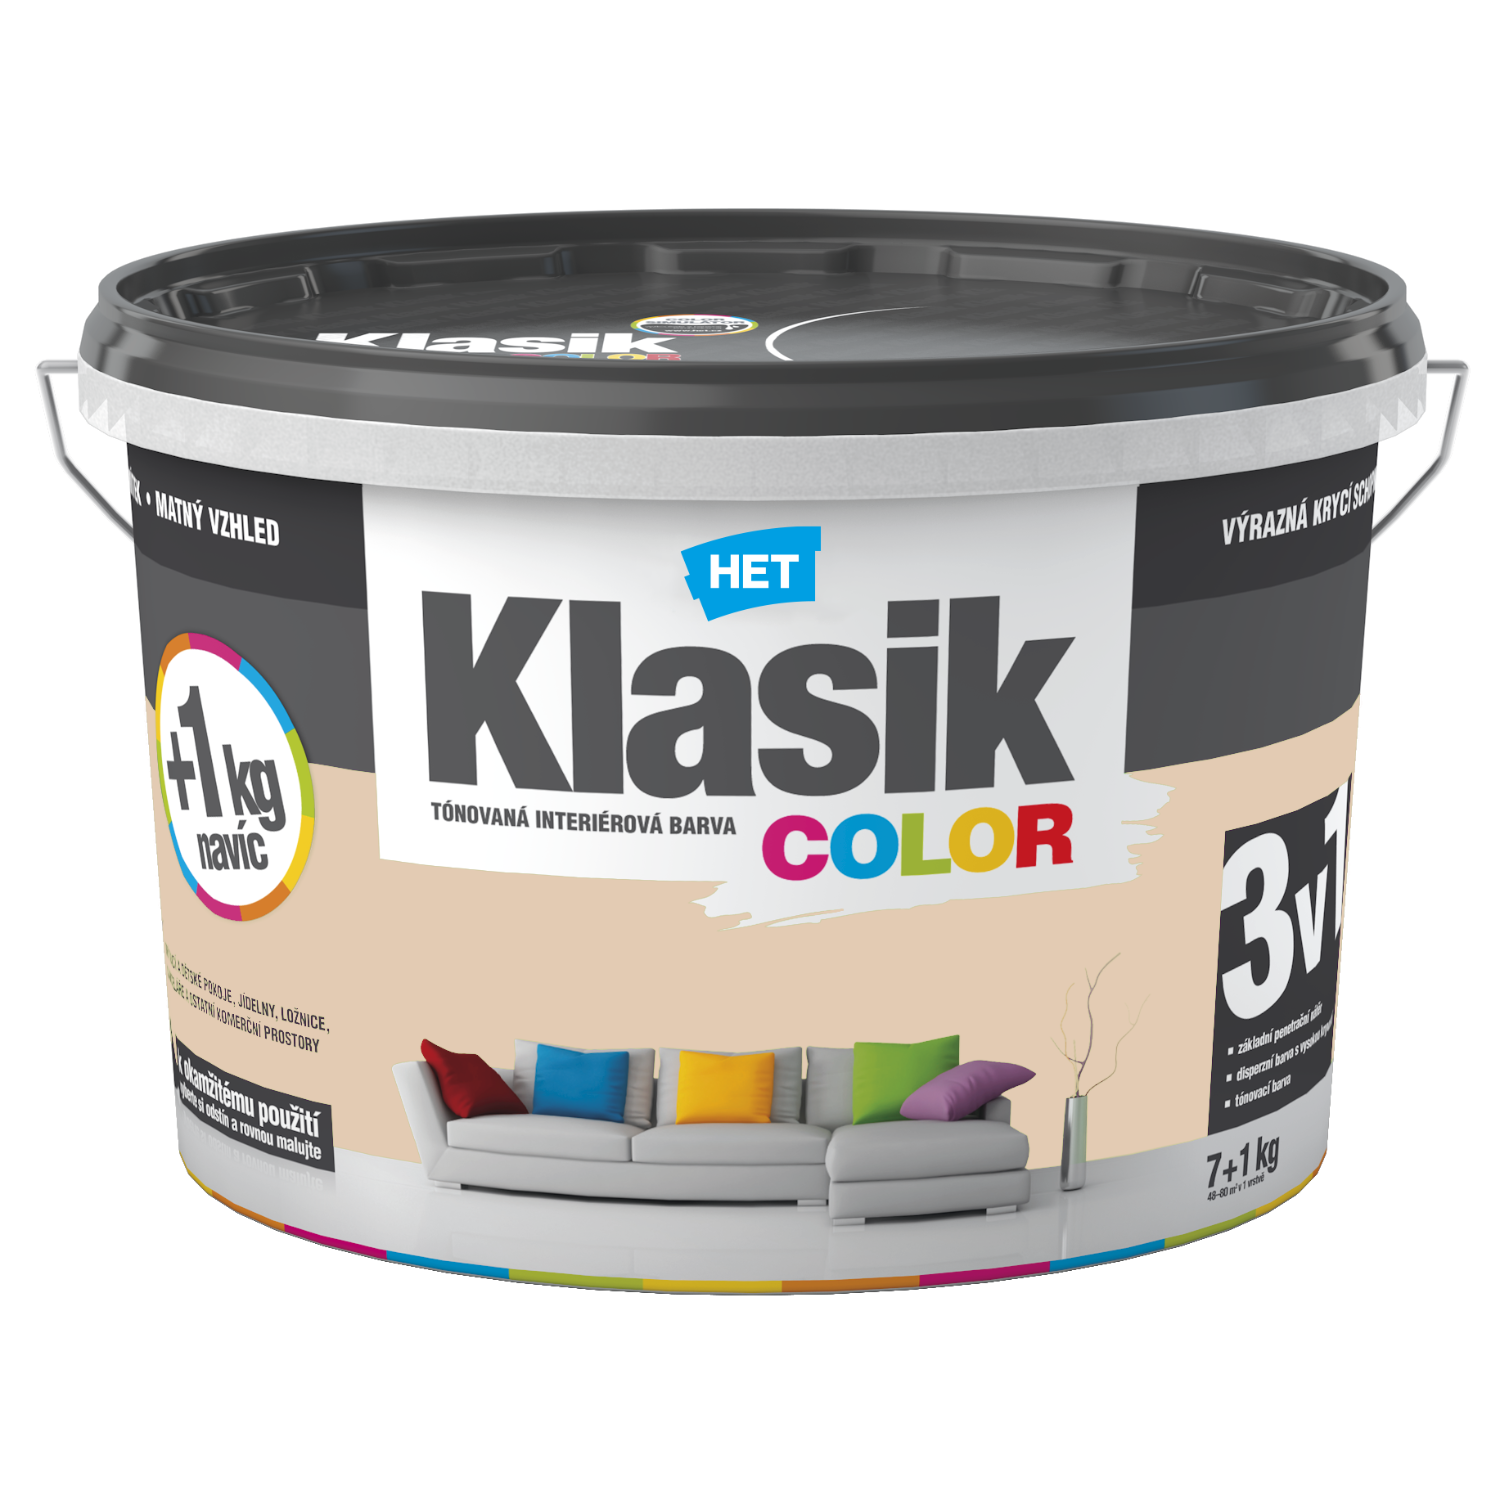 HET Klasik COLOR tónovaná interiérová akrylátová disperzná oteruvzdorná farba 7 kg + 1 kg zdarma, KC0238 - béžový muškátový